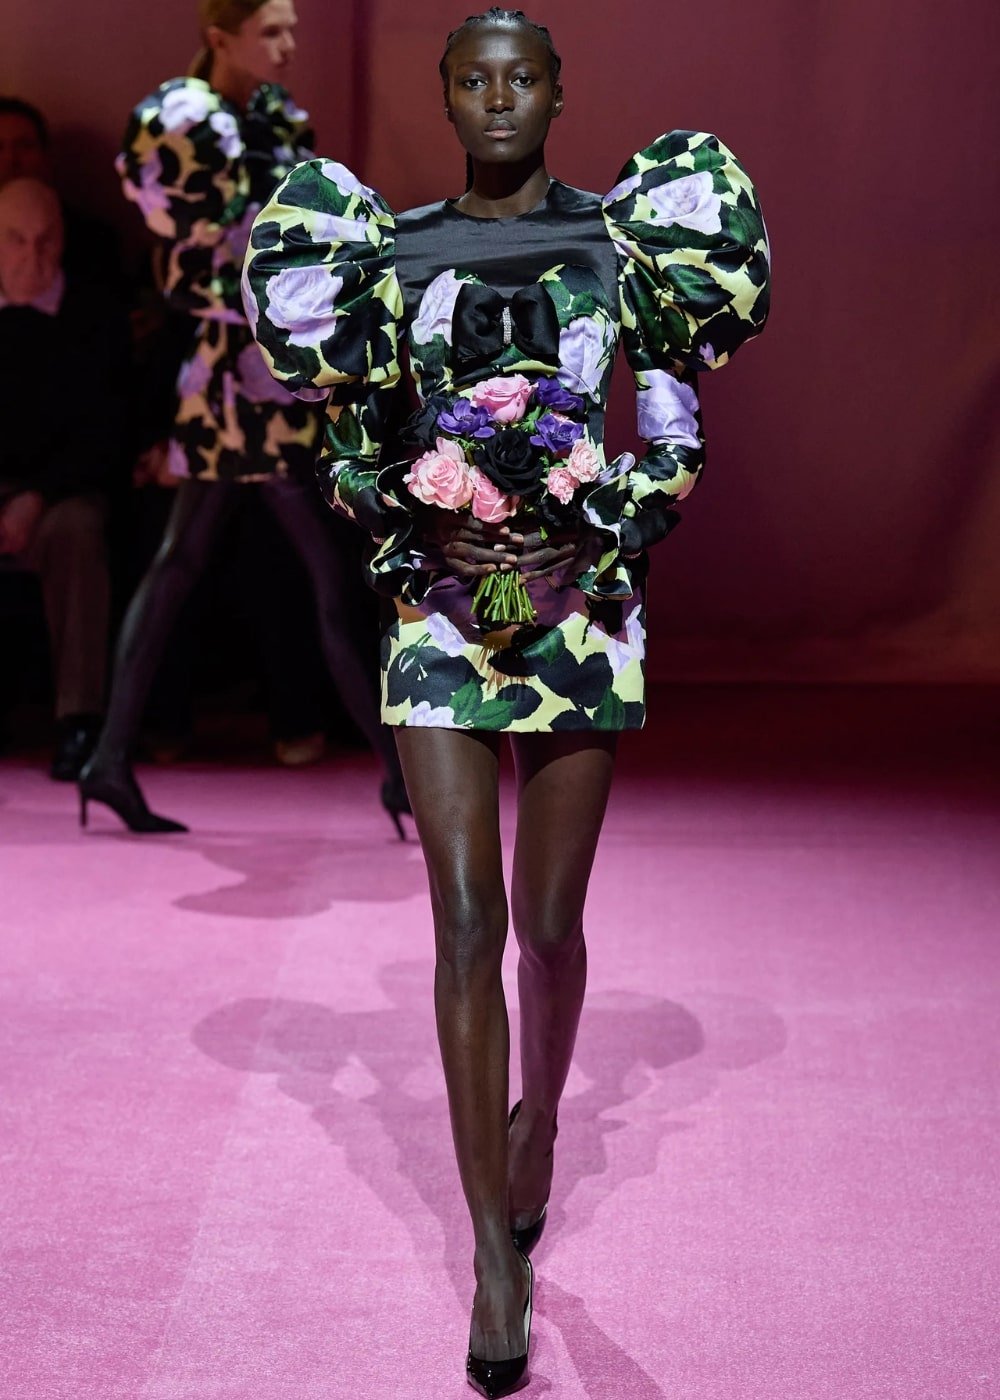 Richard Quinn A/W 2022 - vestido curto florido - London Fashion Week - Outono - modelo andando pela passarela - https://stealthelook.com.br